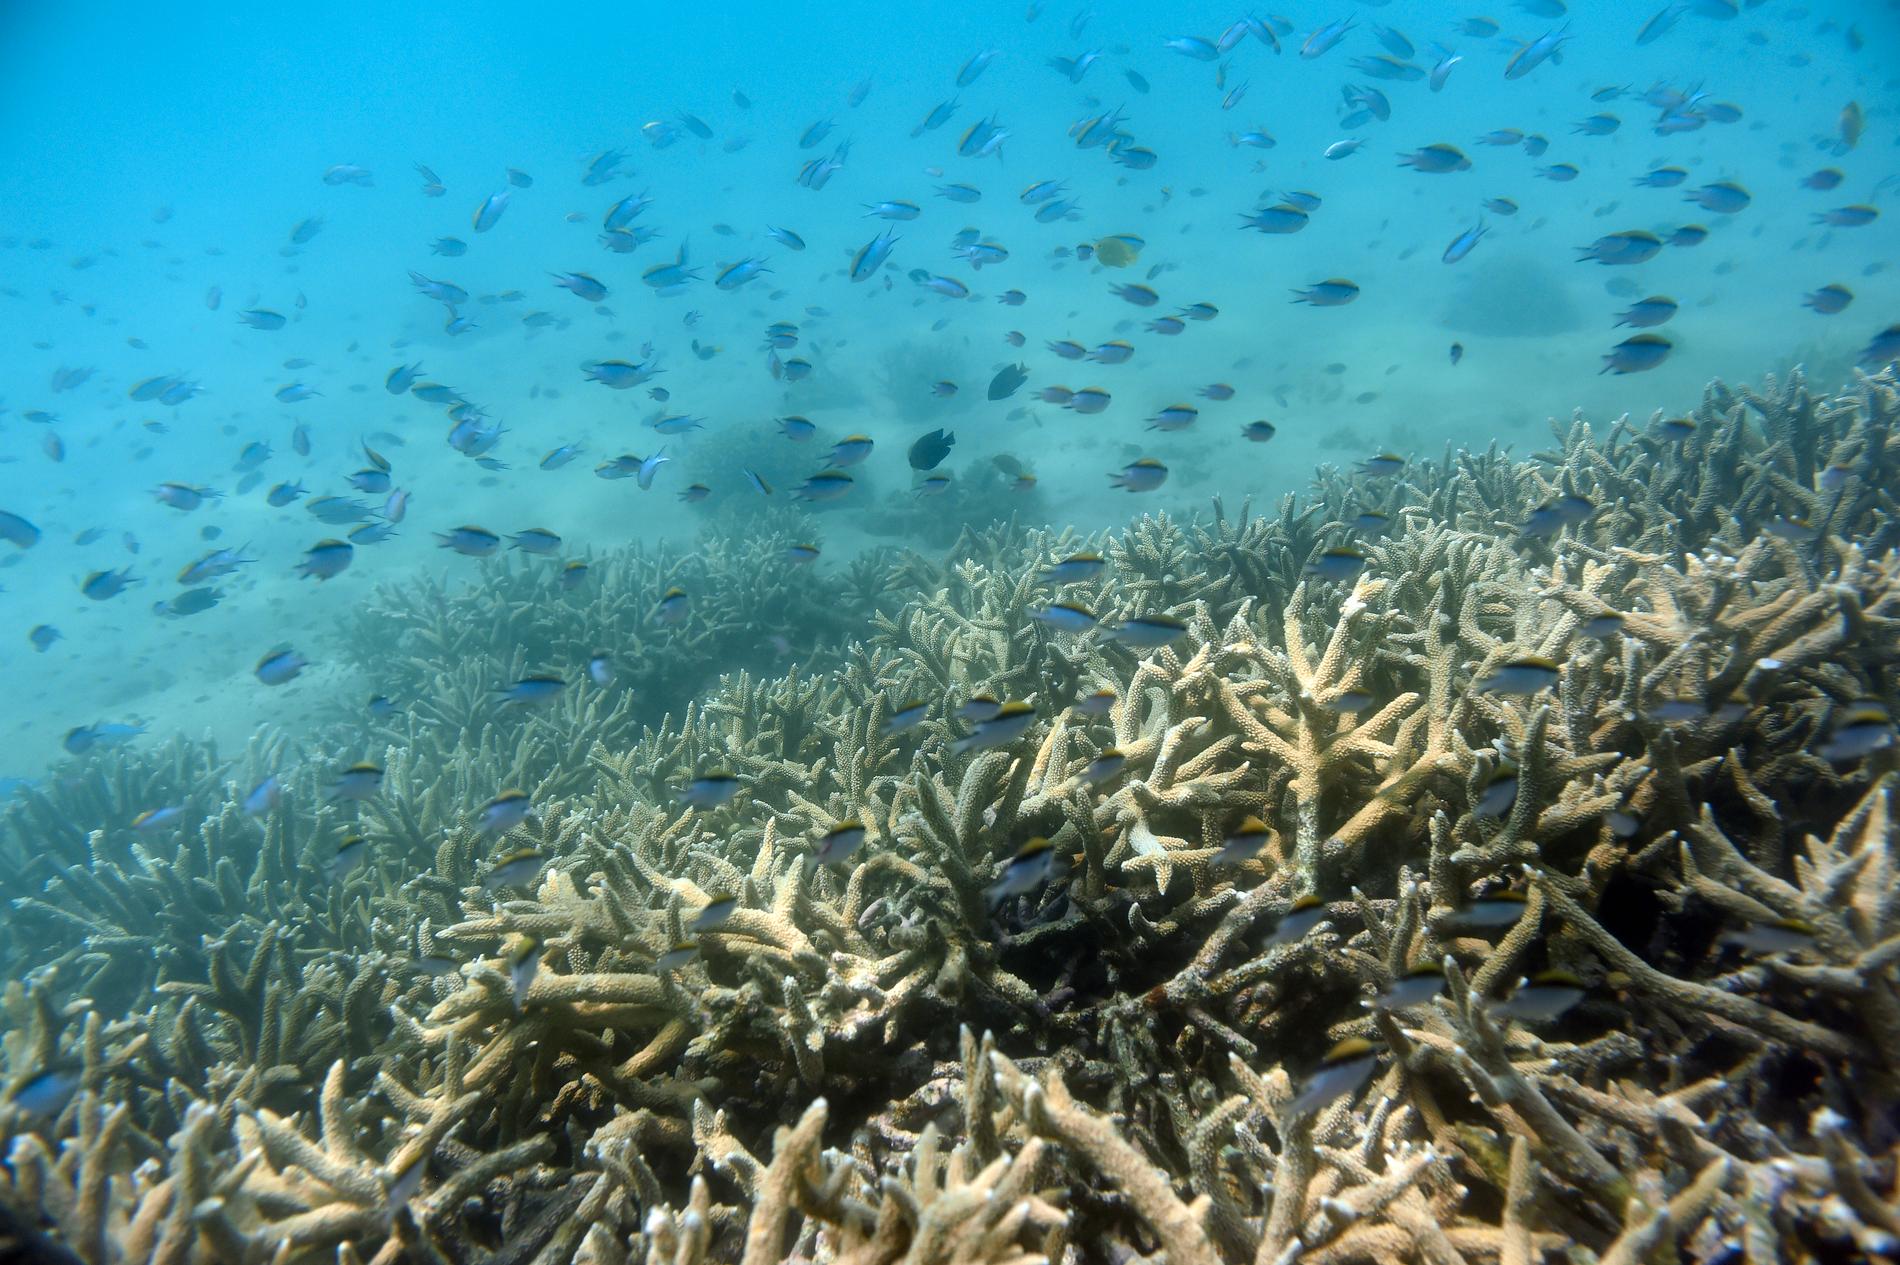 Världens korallrev är hem för ett närmast oräkneligt antal arter, från viktiga mikroorganismer till fiskar. Men till följd av klimatförändringarna hotar omfattande koralldöd. Arkivbild.